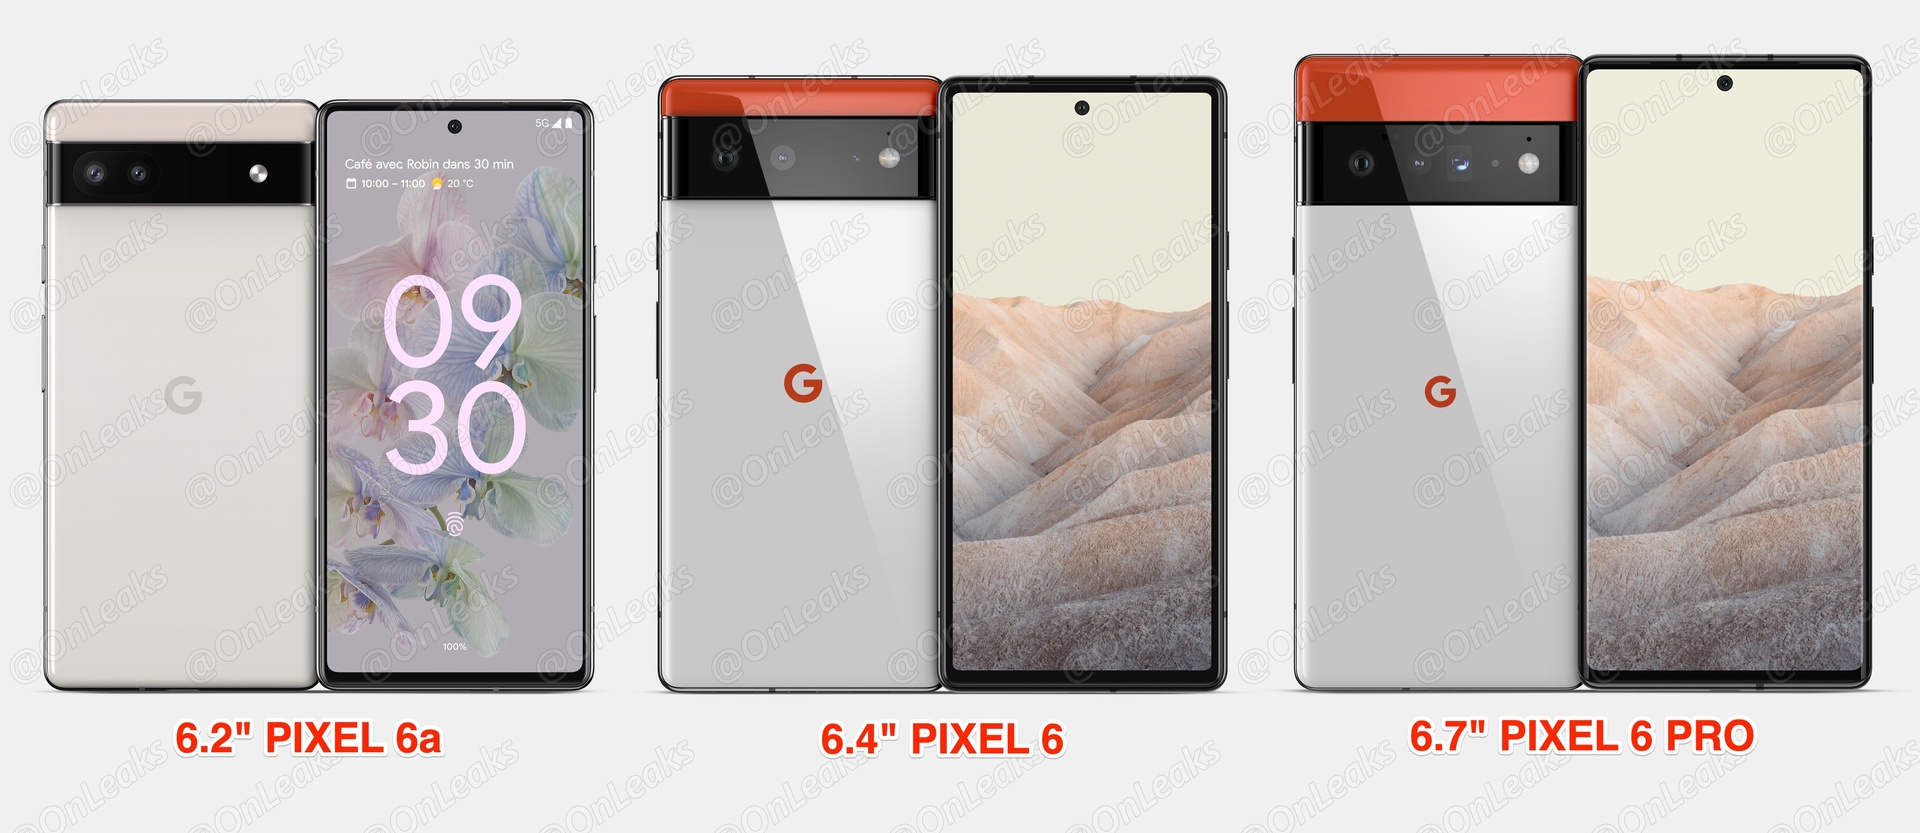 Direct comparison Pixel 6a, Pixel 6, Pixel 6 Pro